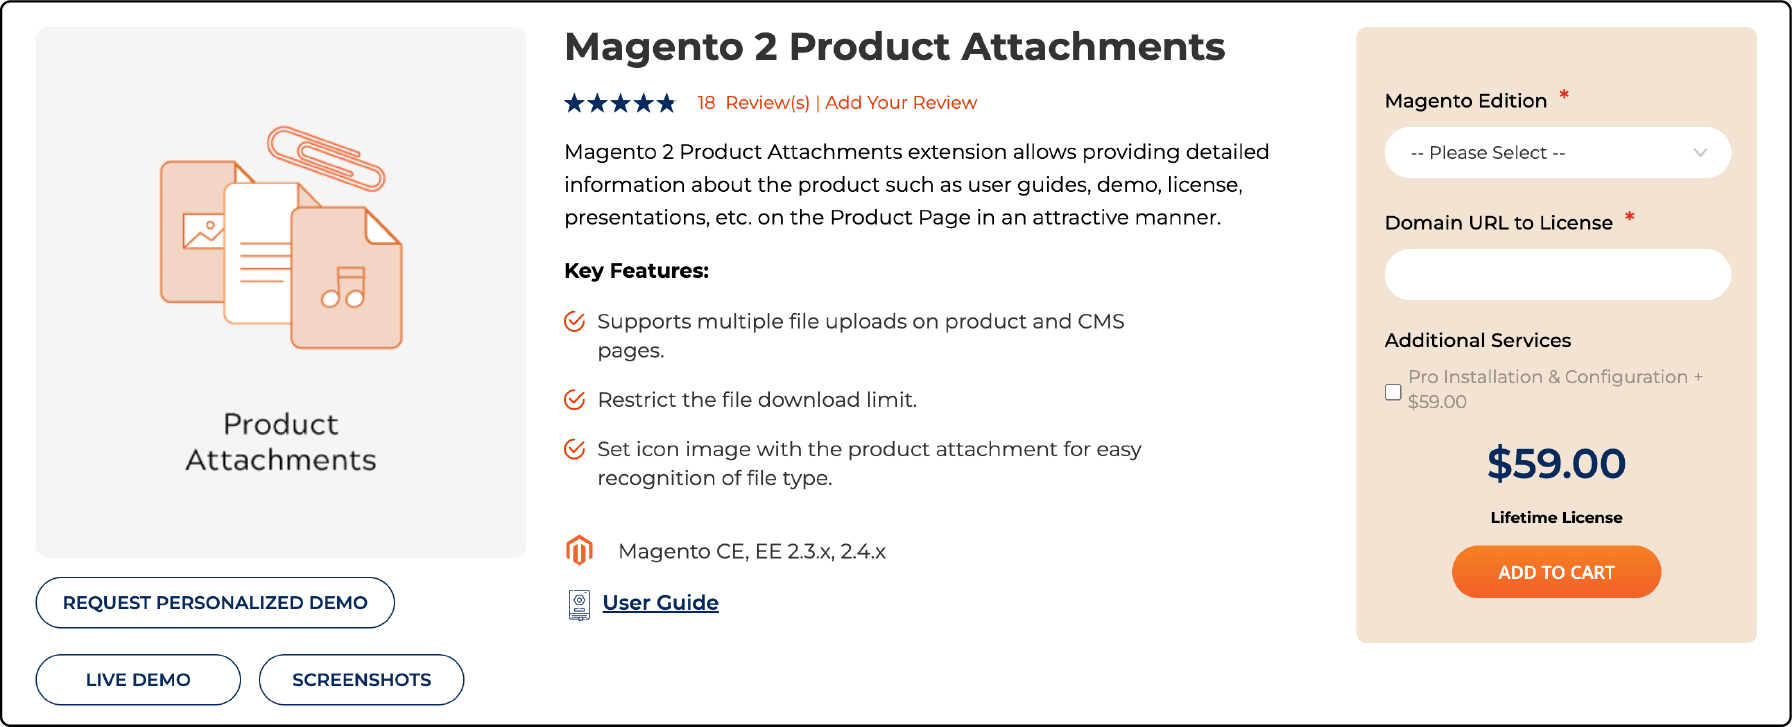 Meetanshi's Magento 2 Product Attachments Screenshot